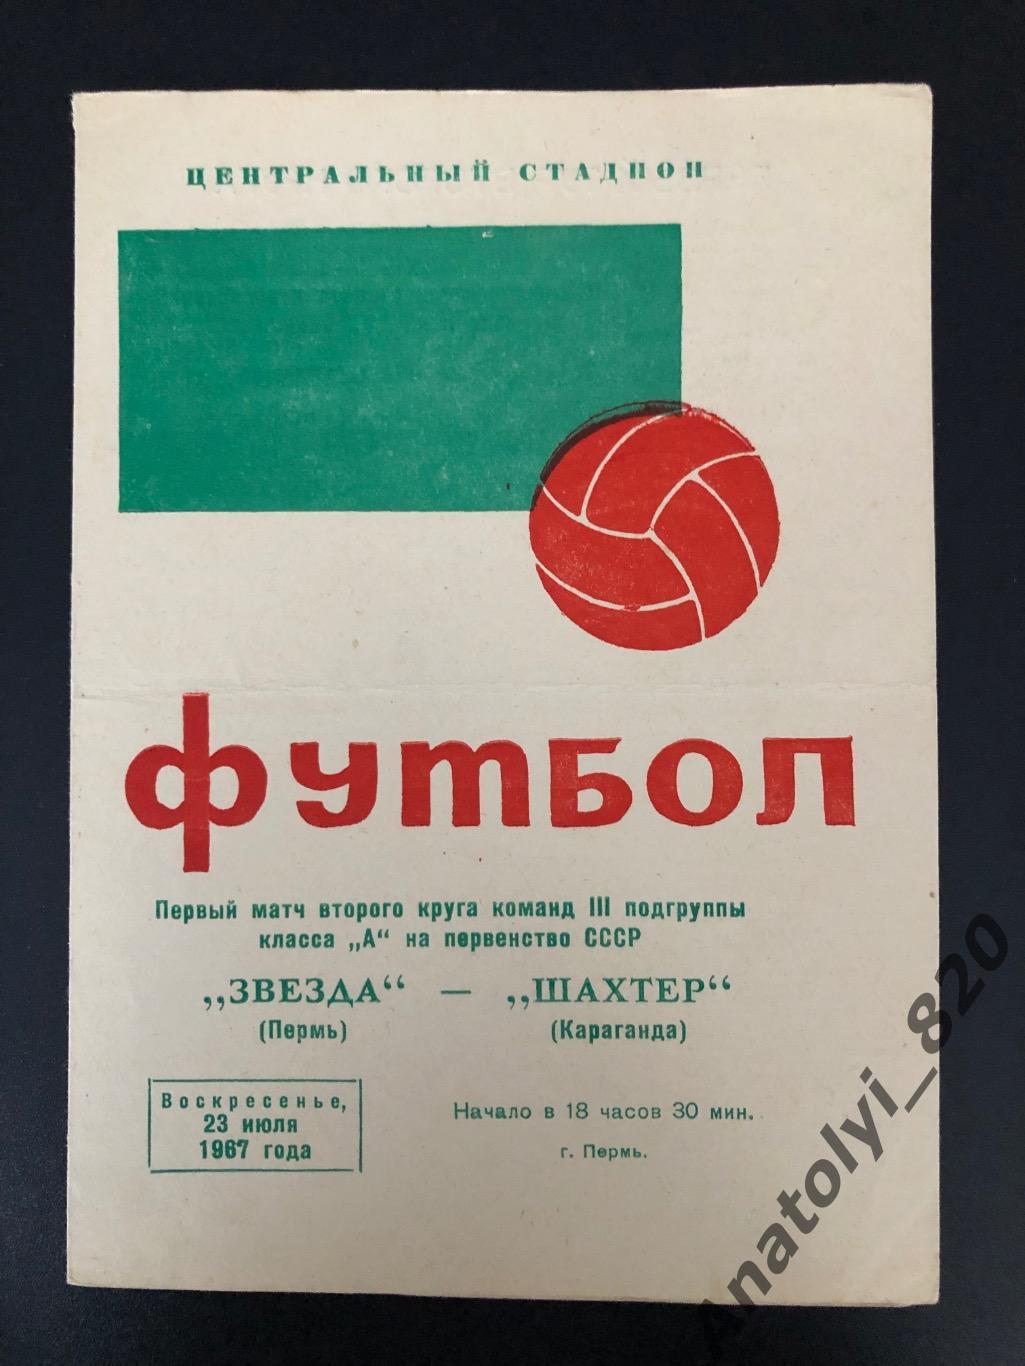 Звезда Пермь - Шахтёр Караганда, 1967 год